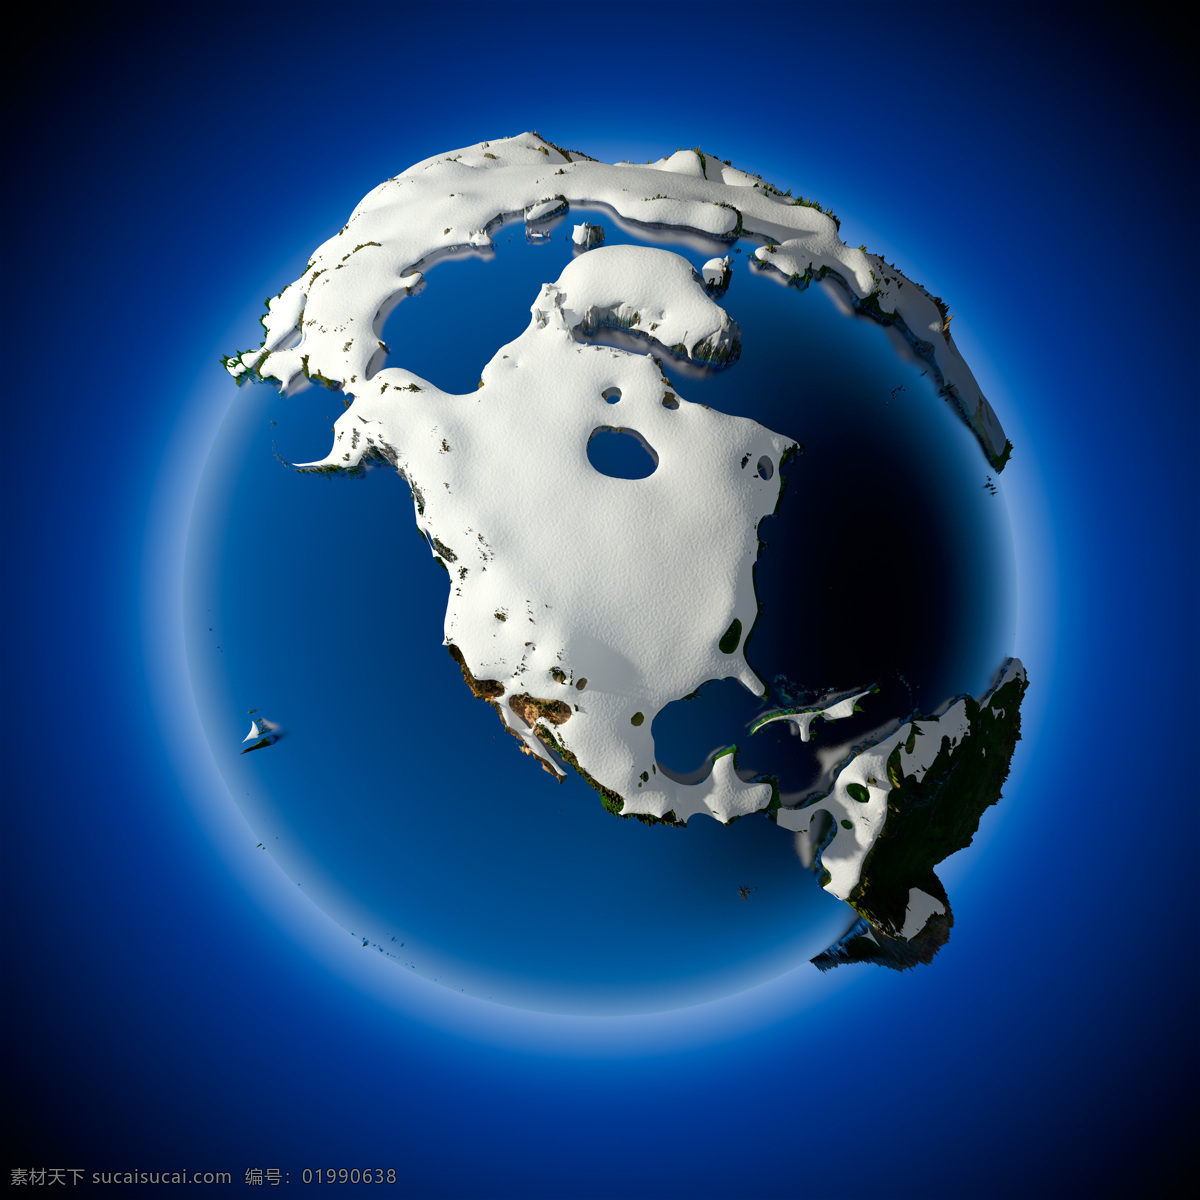 地球 上 积雪 覆盖 大陆 积雪覆盖 冬天 星球 地球图片 环境家居